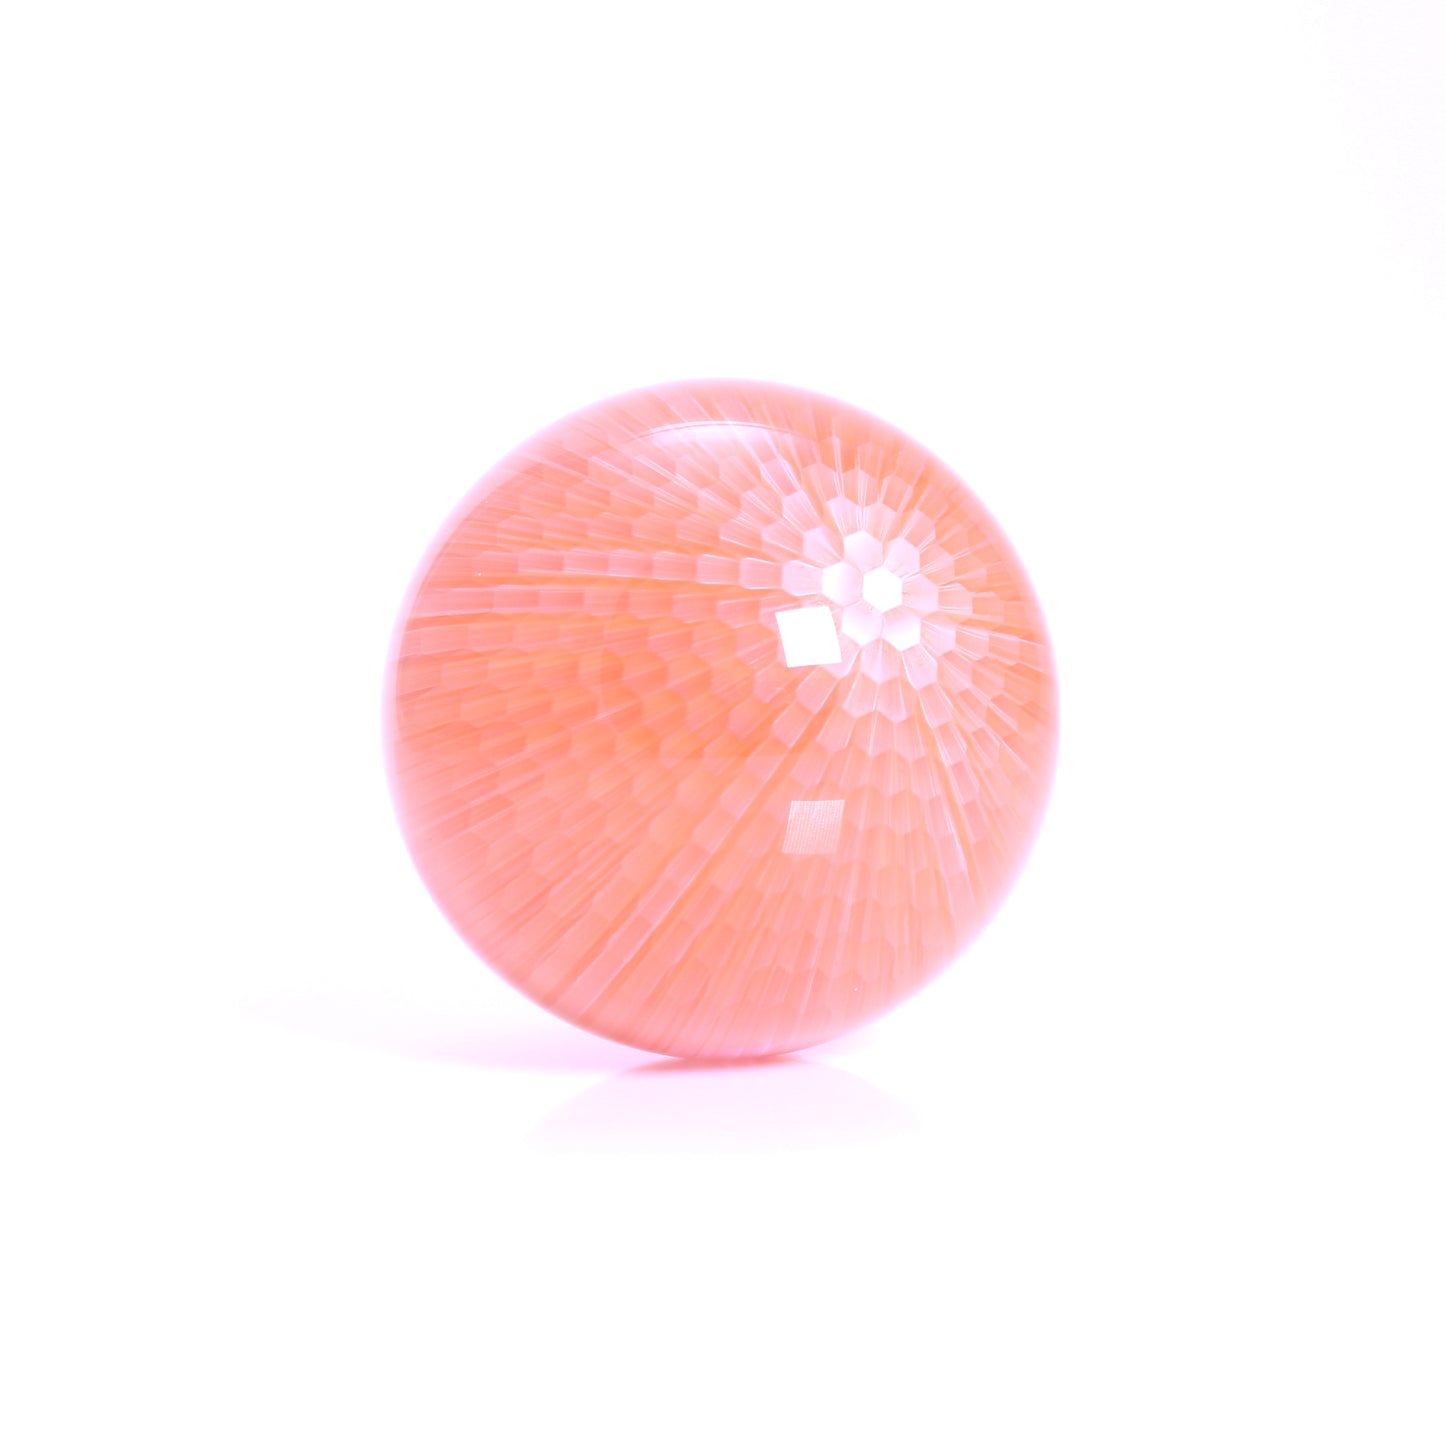 "Endeavor" 30mm Sphere